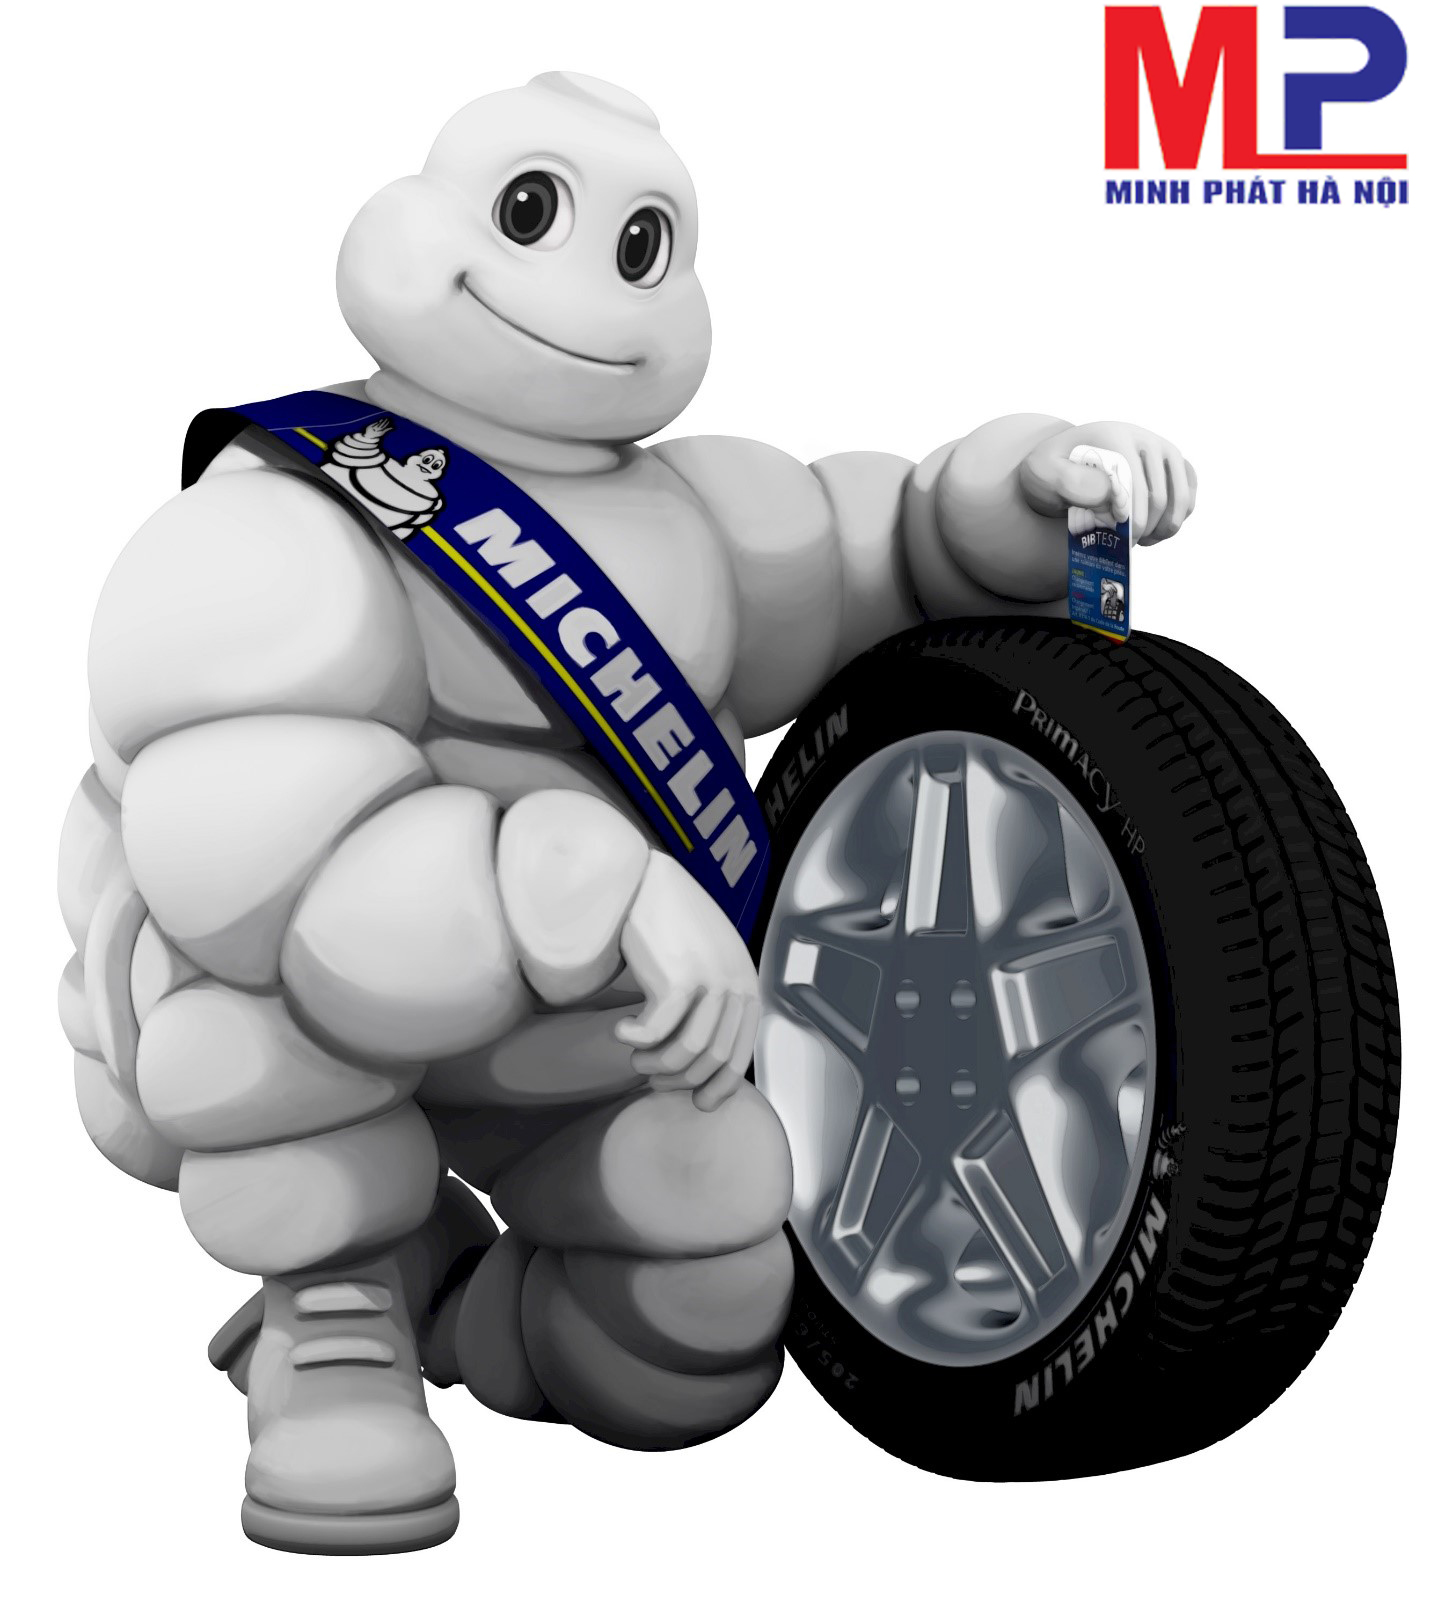 Lốp Michelin cho ô tô có những ưu điểm gì bạn cần biết ? Tư vấn